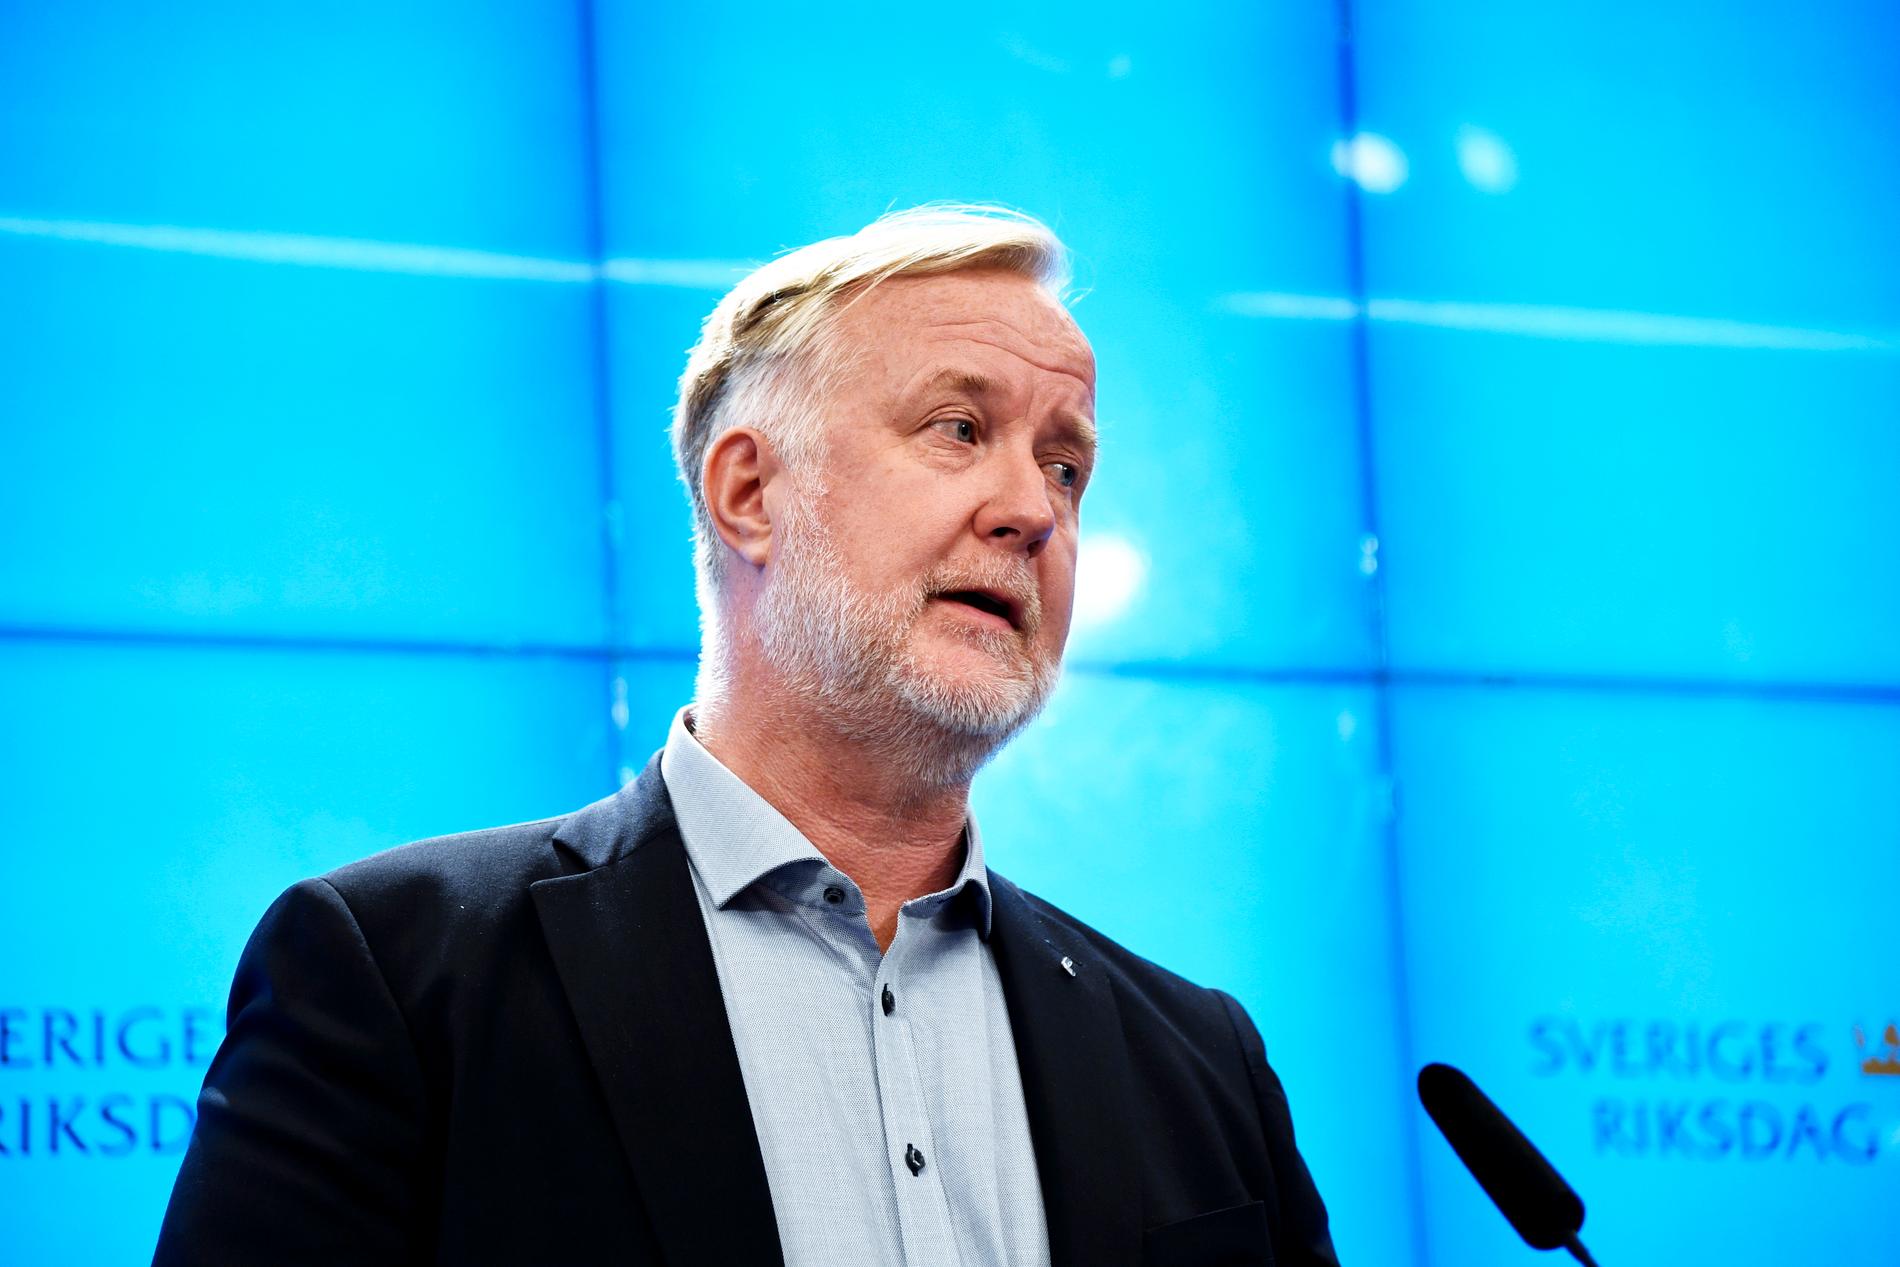 Det måste bli enklare att bygga ny kärnkraft i hela Sverige för att klara energibehovet, säger Liberalernas partiledare Johan Pehrson. Arkivbild.